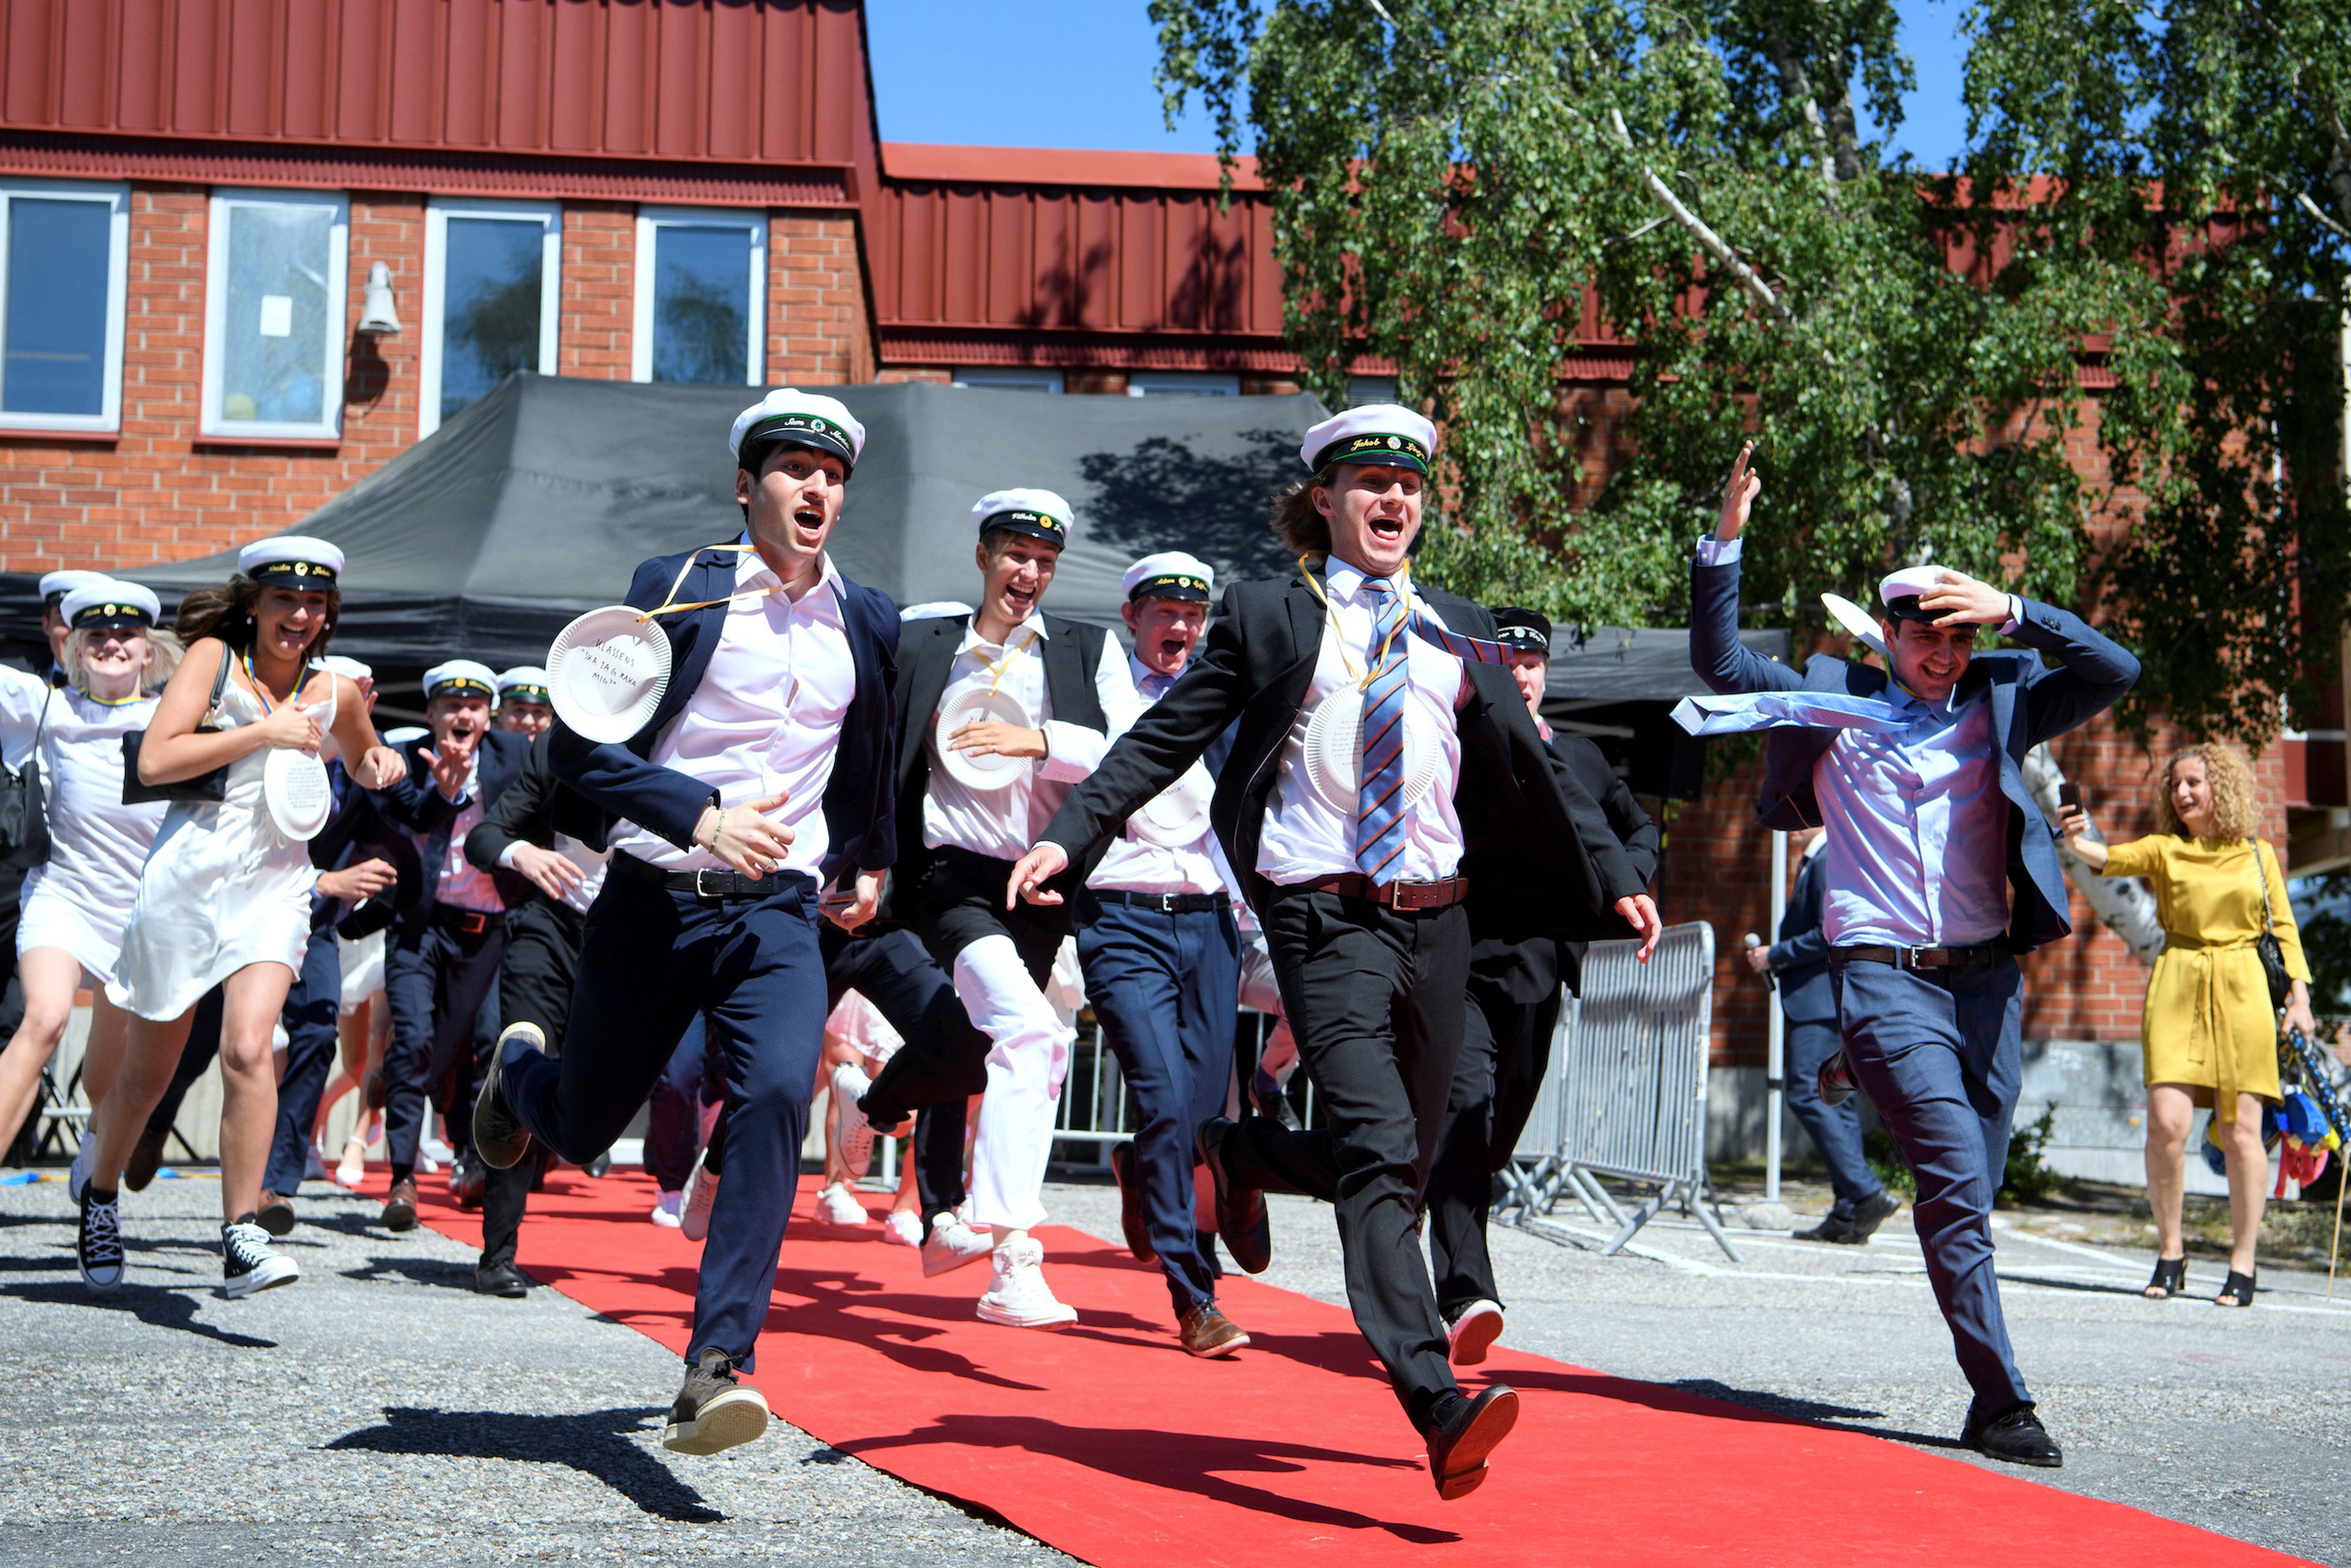 Estudiantes de un instituto en Suecia celebran su graduación